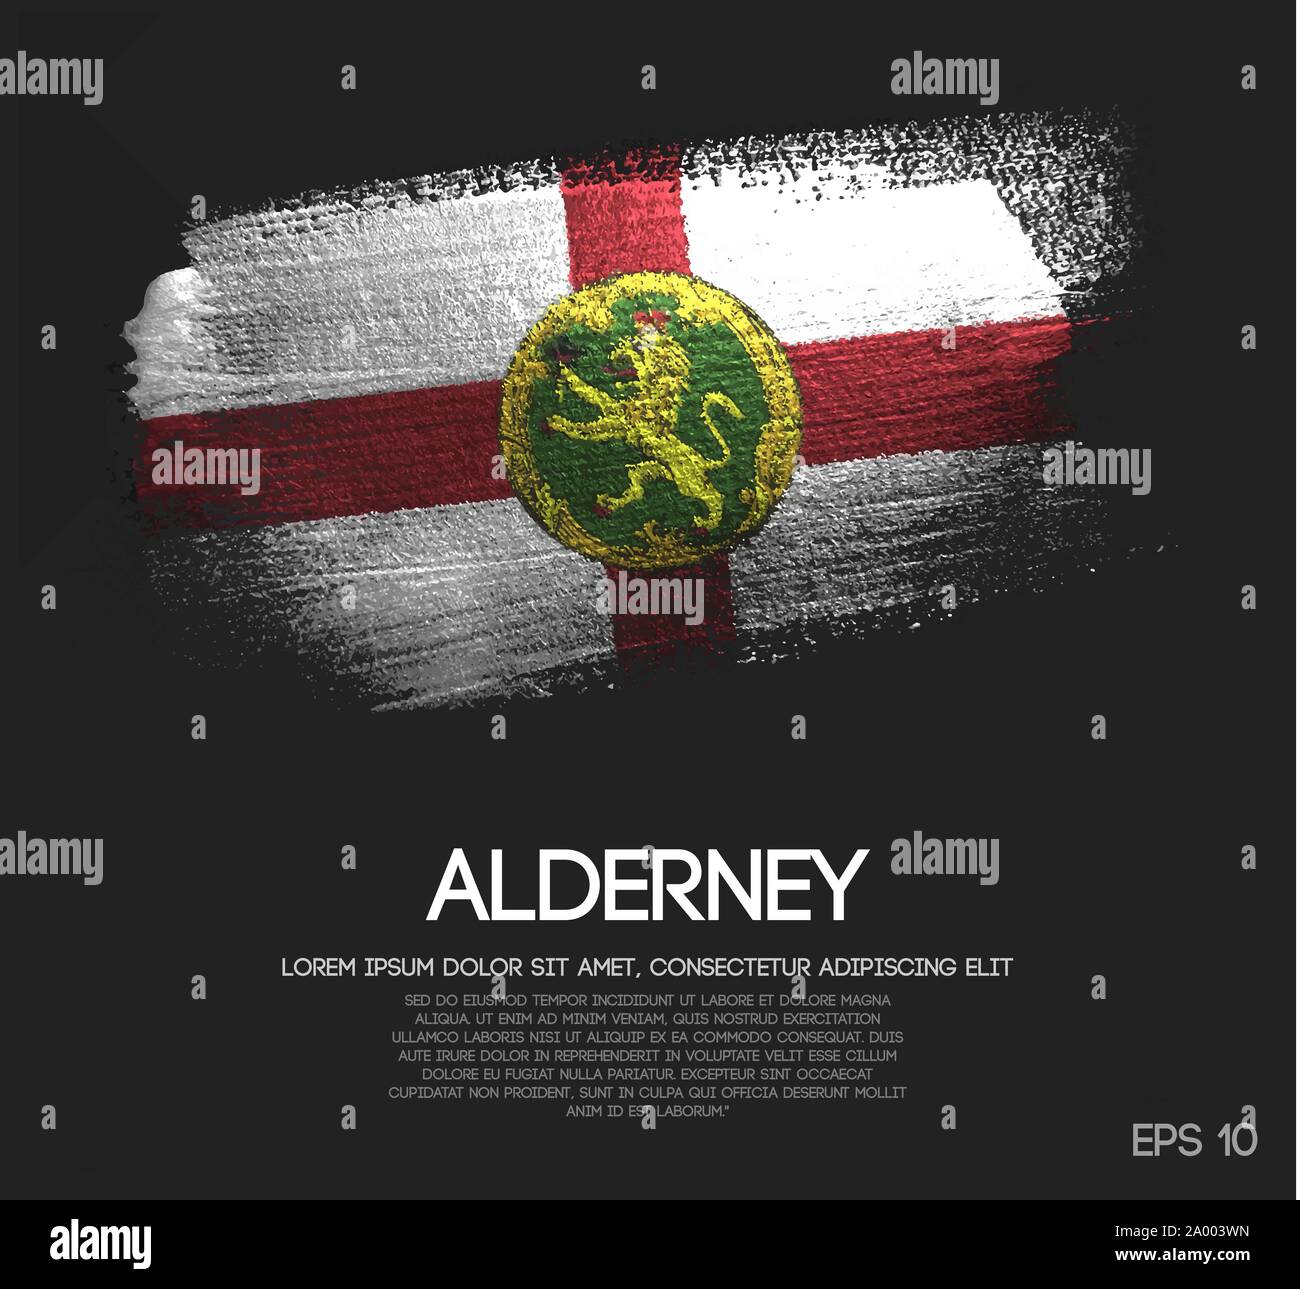 Alderney bandiera fatta di Glitter Sparkle spazzola vettore di vernice Illustrazione Vettoriale